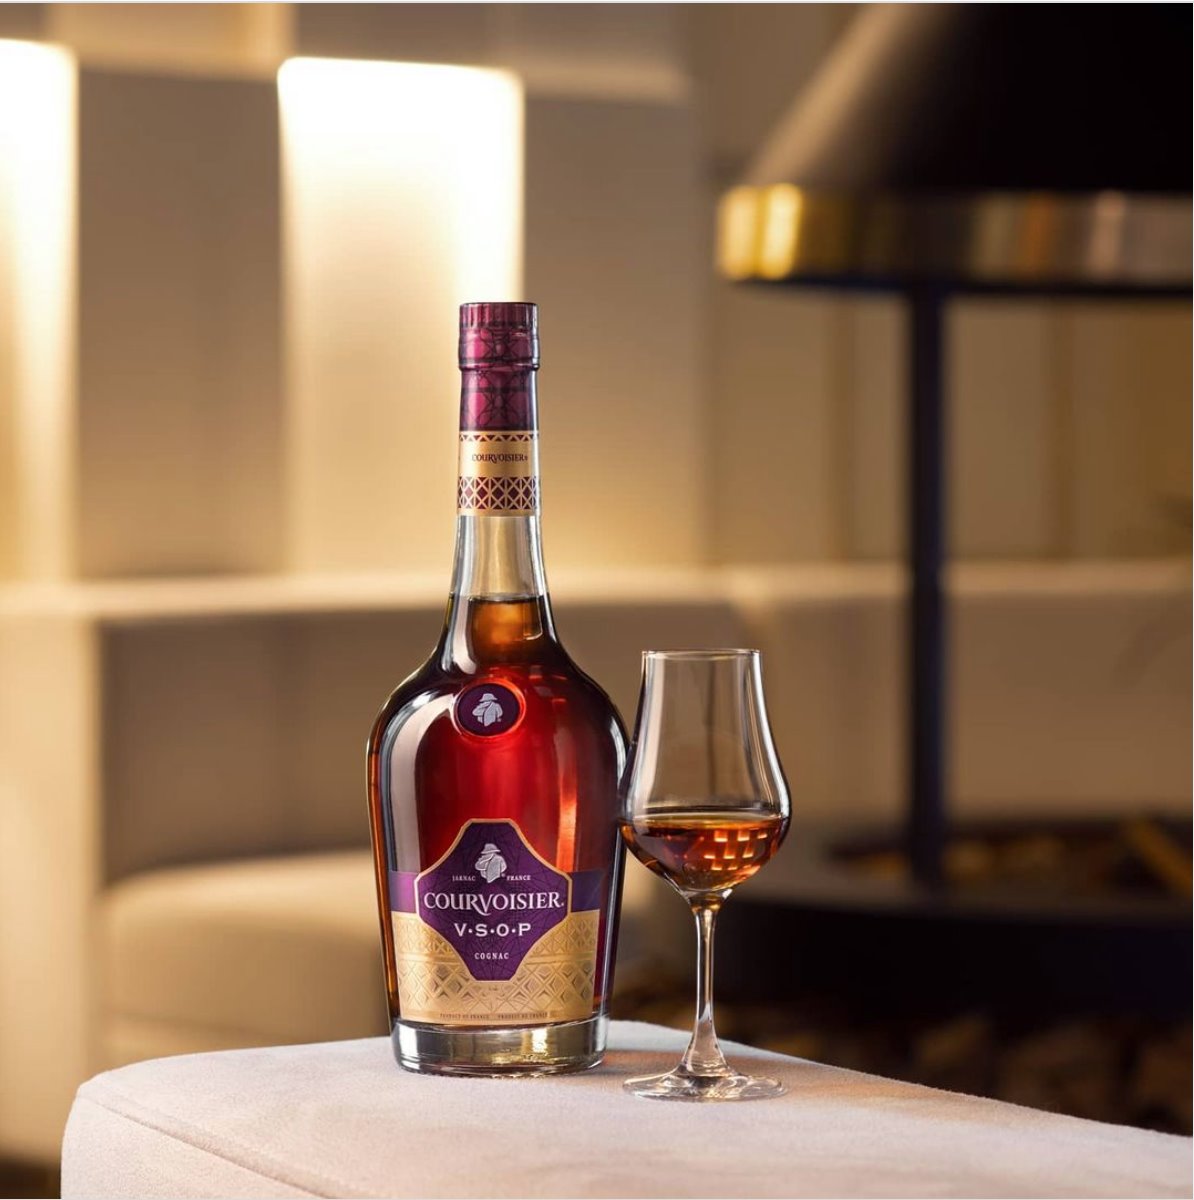 Rượu Courvoisier Vsop 70 Cl Cognac - một trong những siêu phẩm của làng rượu Cognac thế giới.